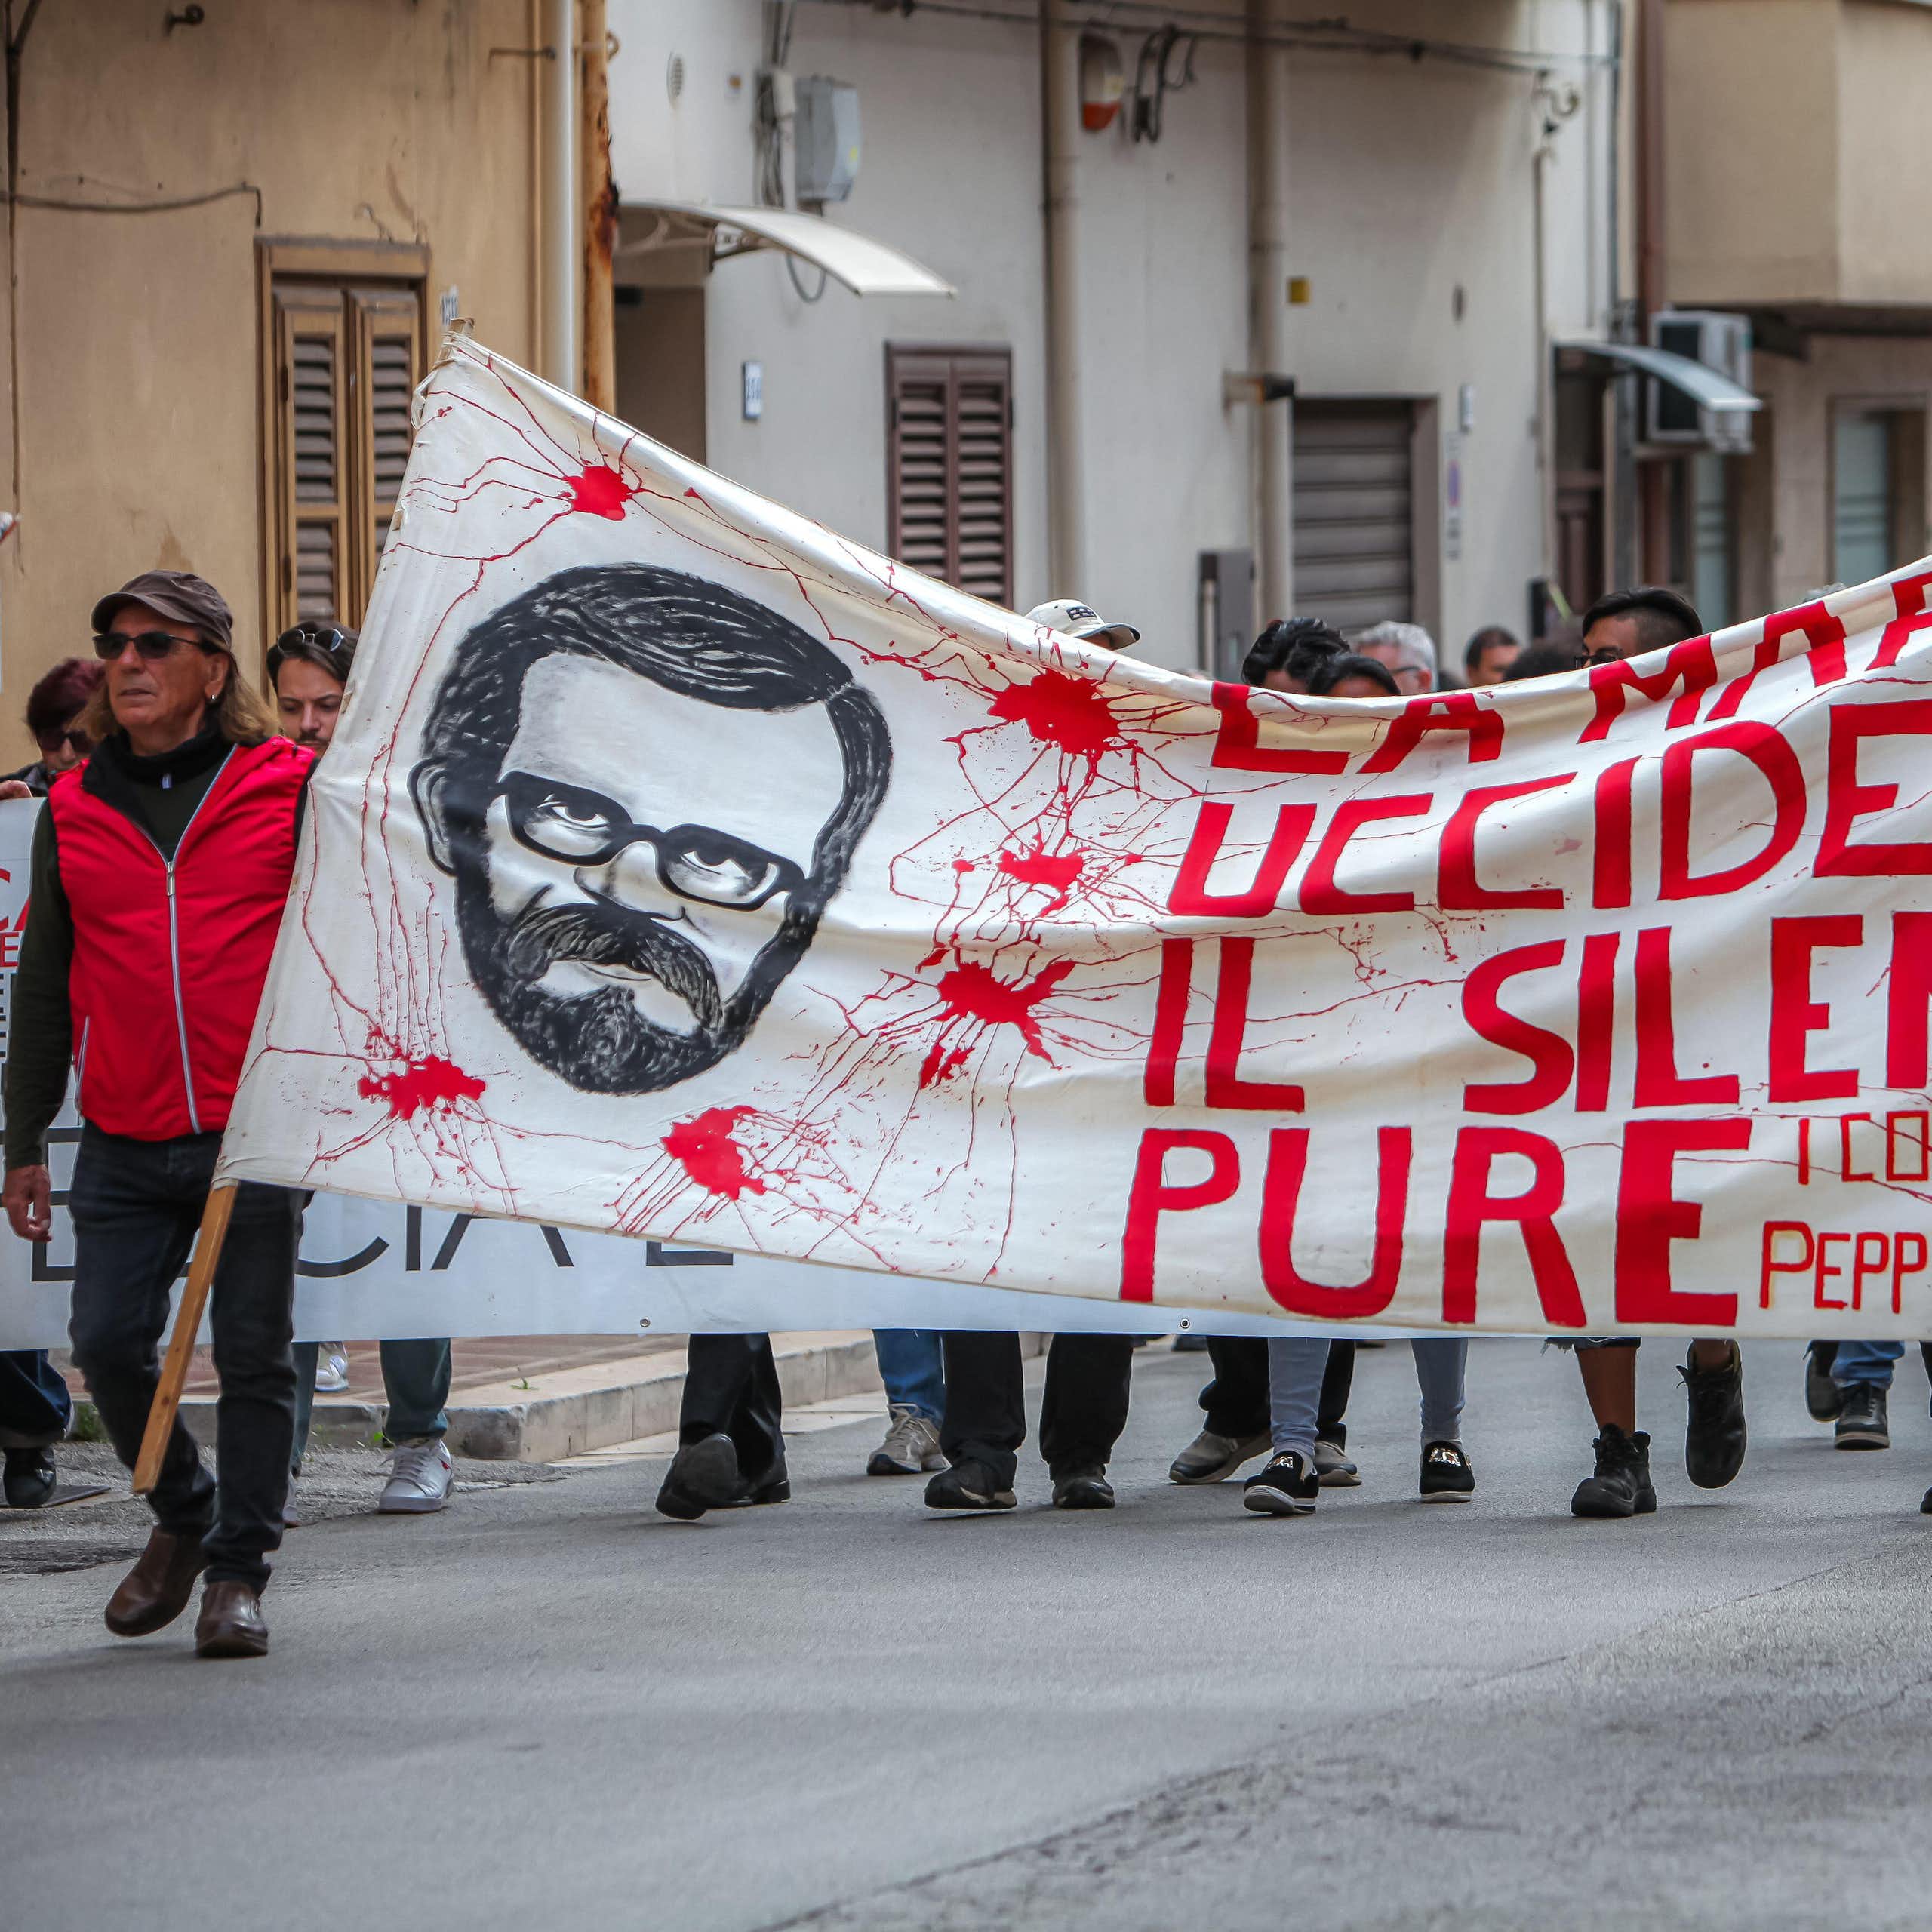 Two men lead a march carrying a banner that reads La mafia uccide il silenzio pure'.